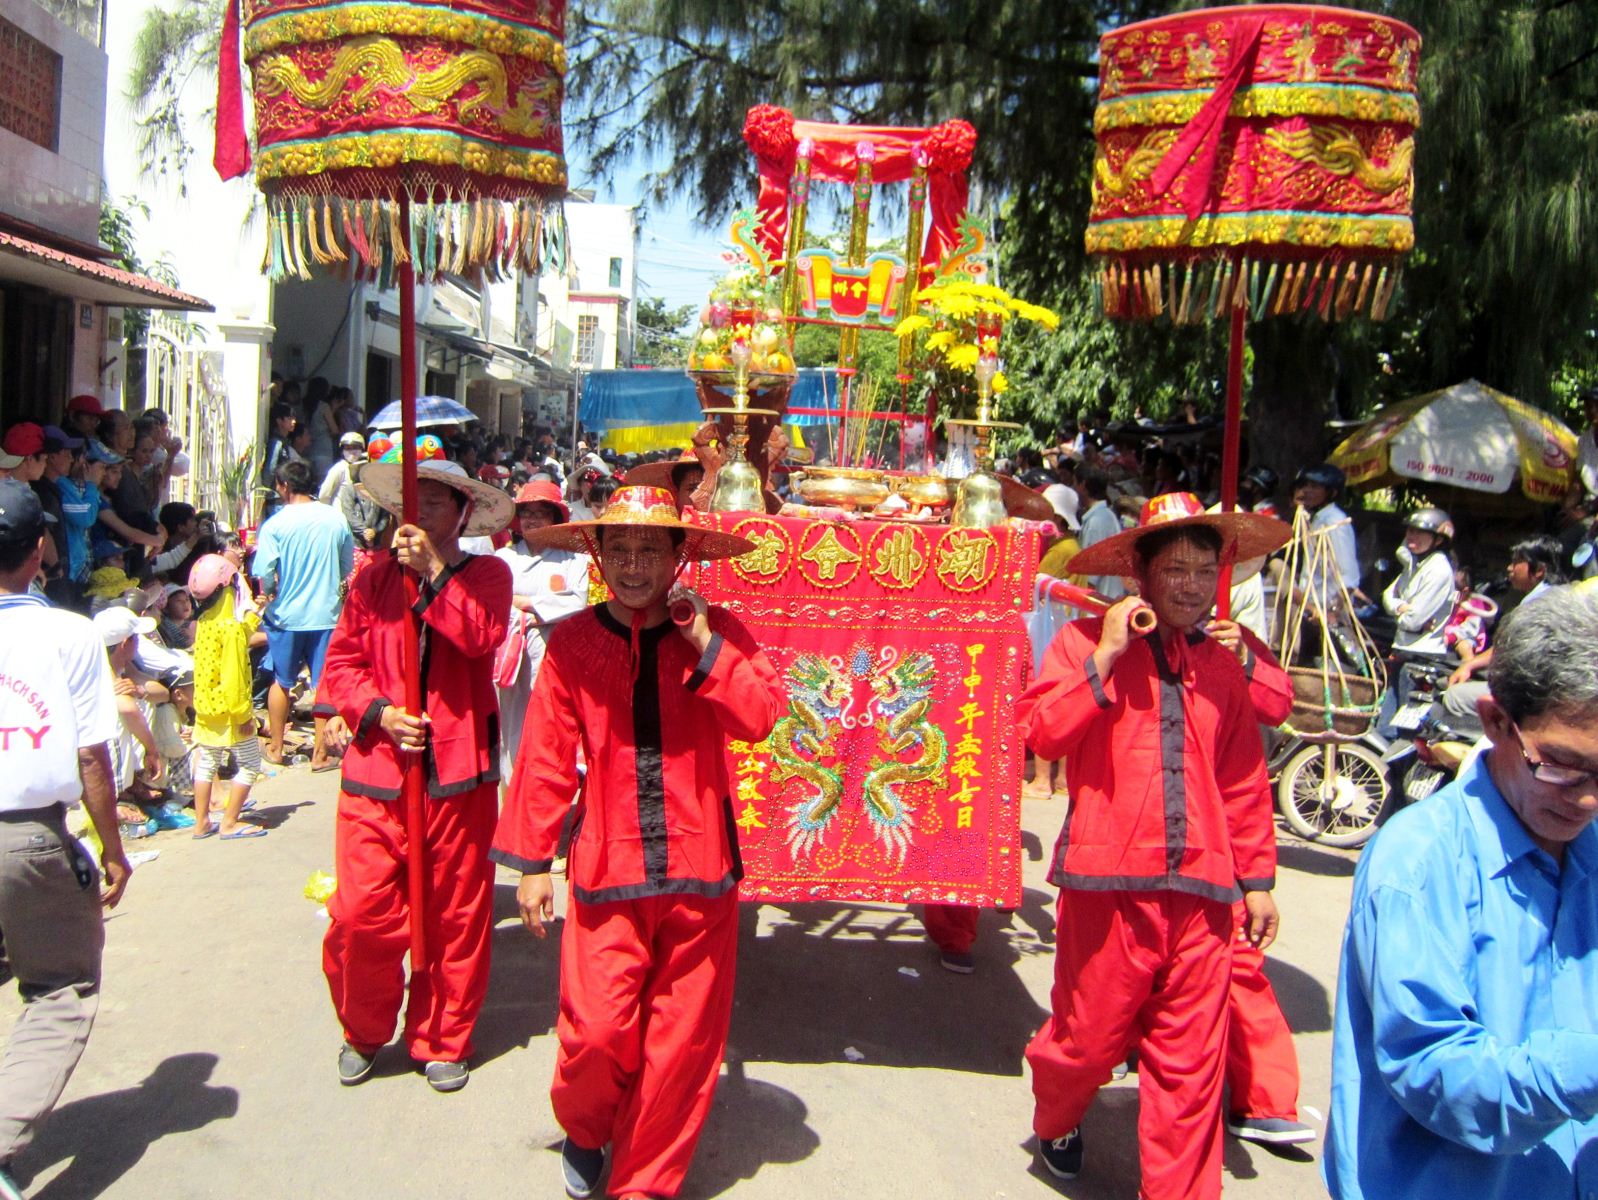 Lễ hội Nghinh Ông quan Thánh nét văn hóa đặc sắc của người Hoa ở Bình Thuận